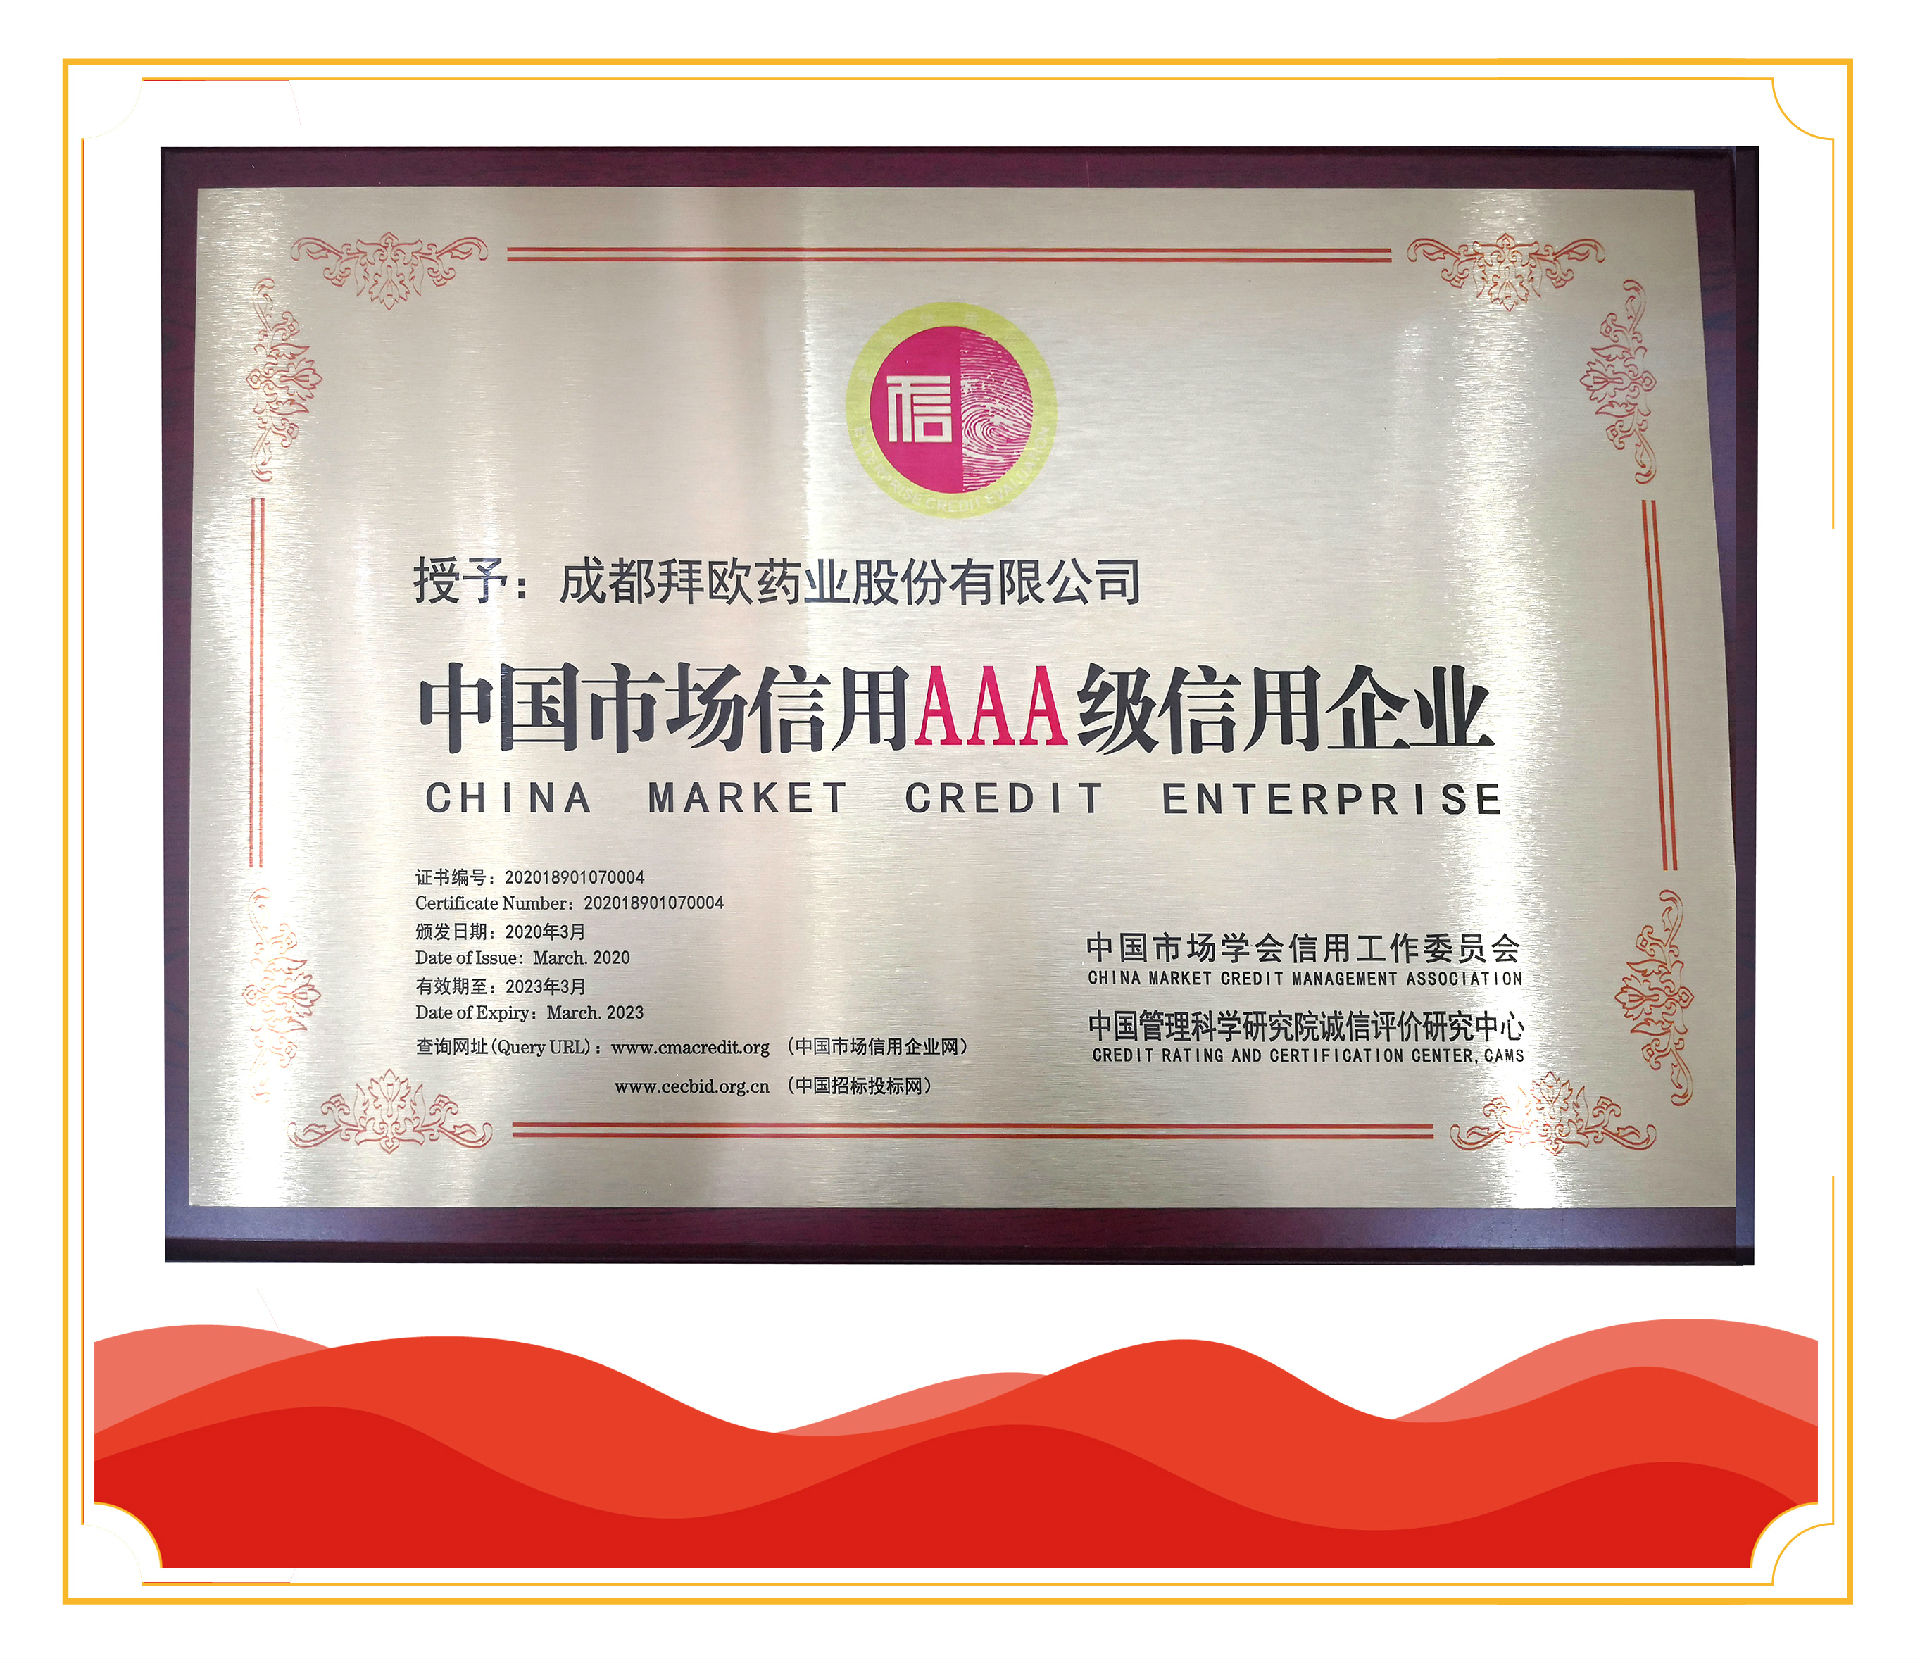 拜欧药业股份荣获中国市场最高级别3a级信用企业称号!